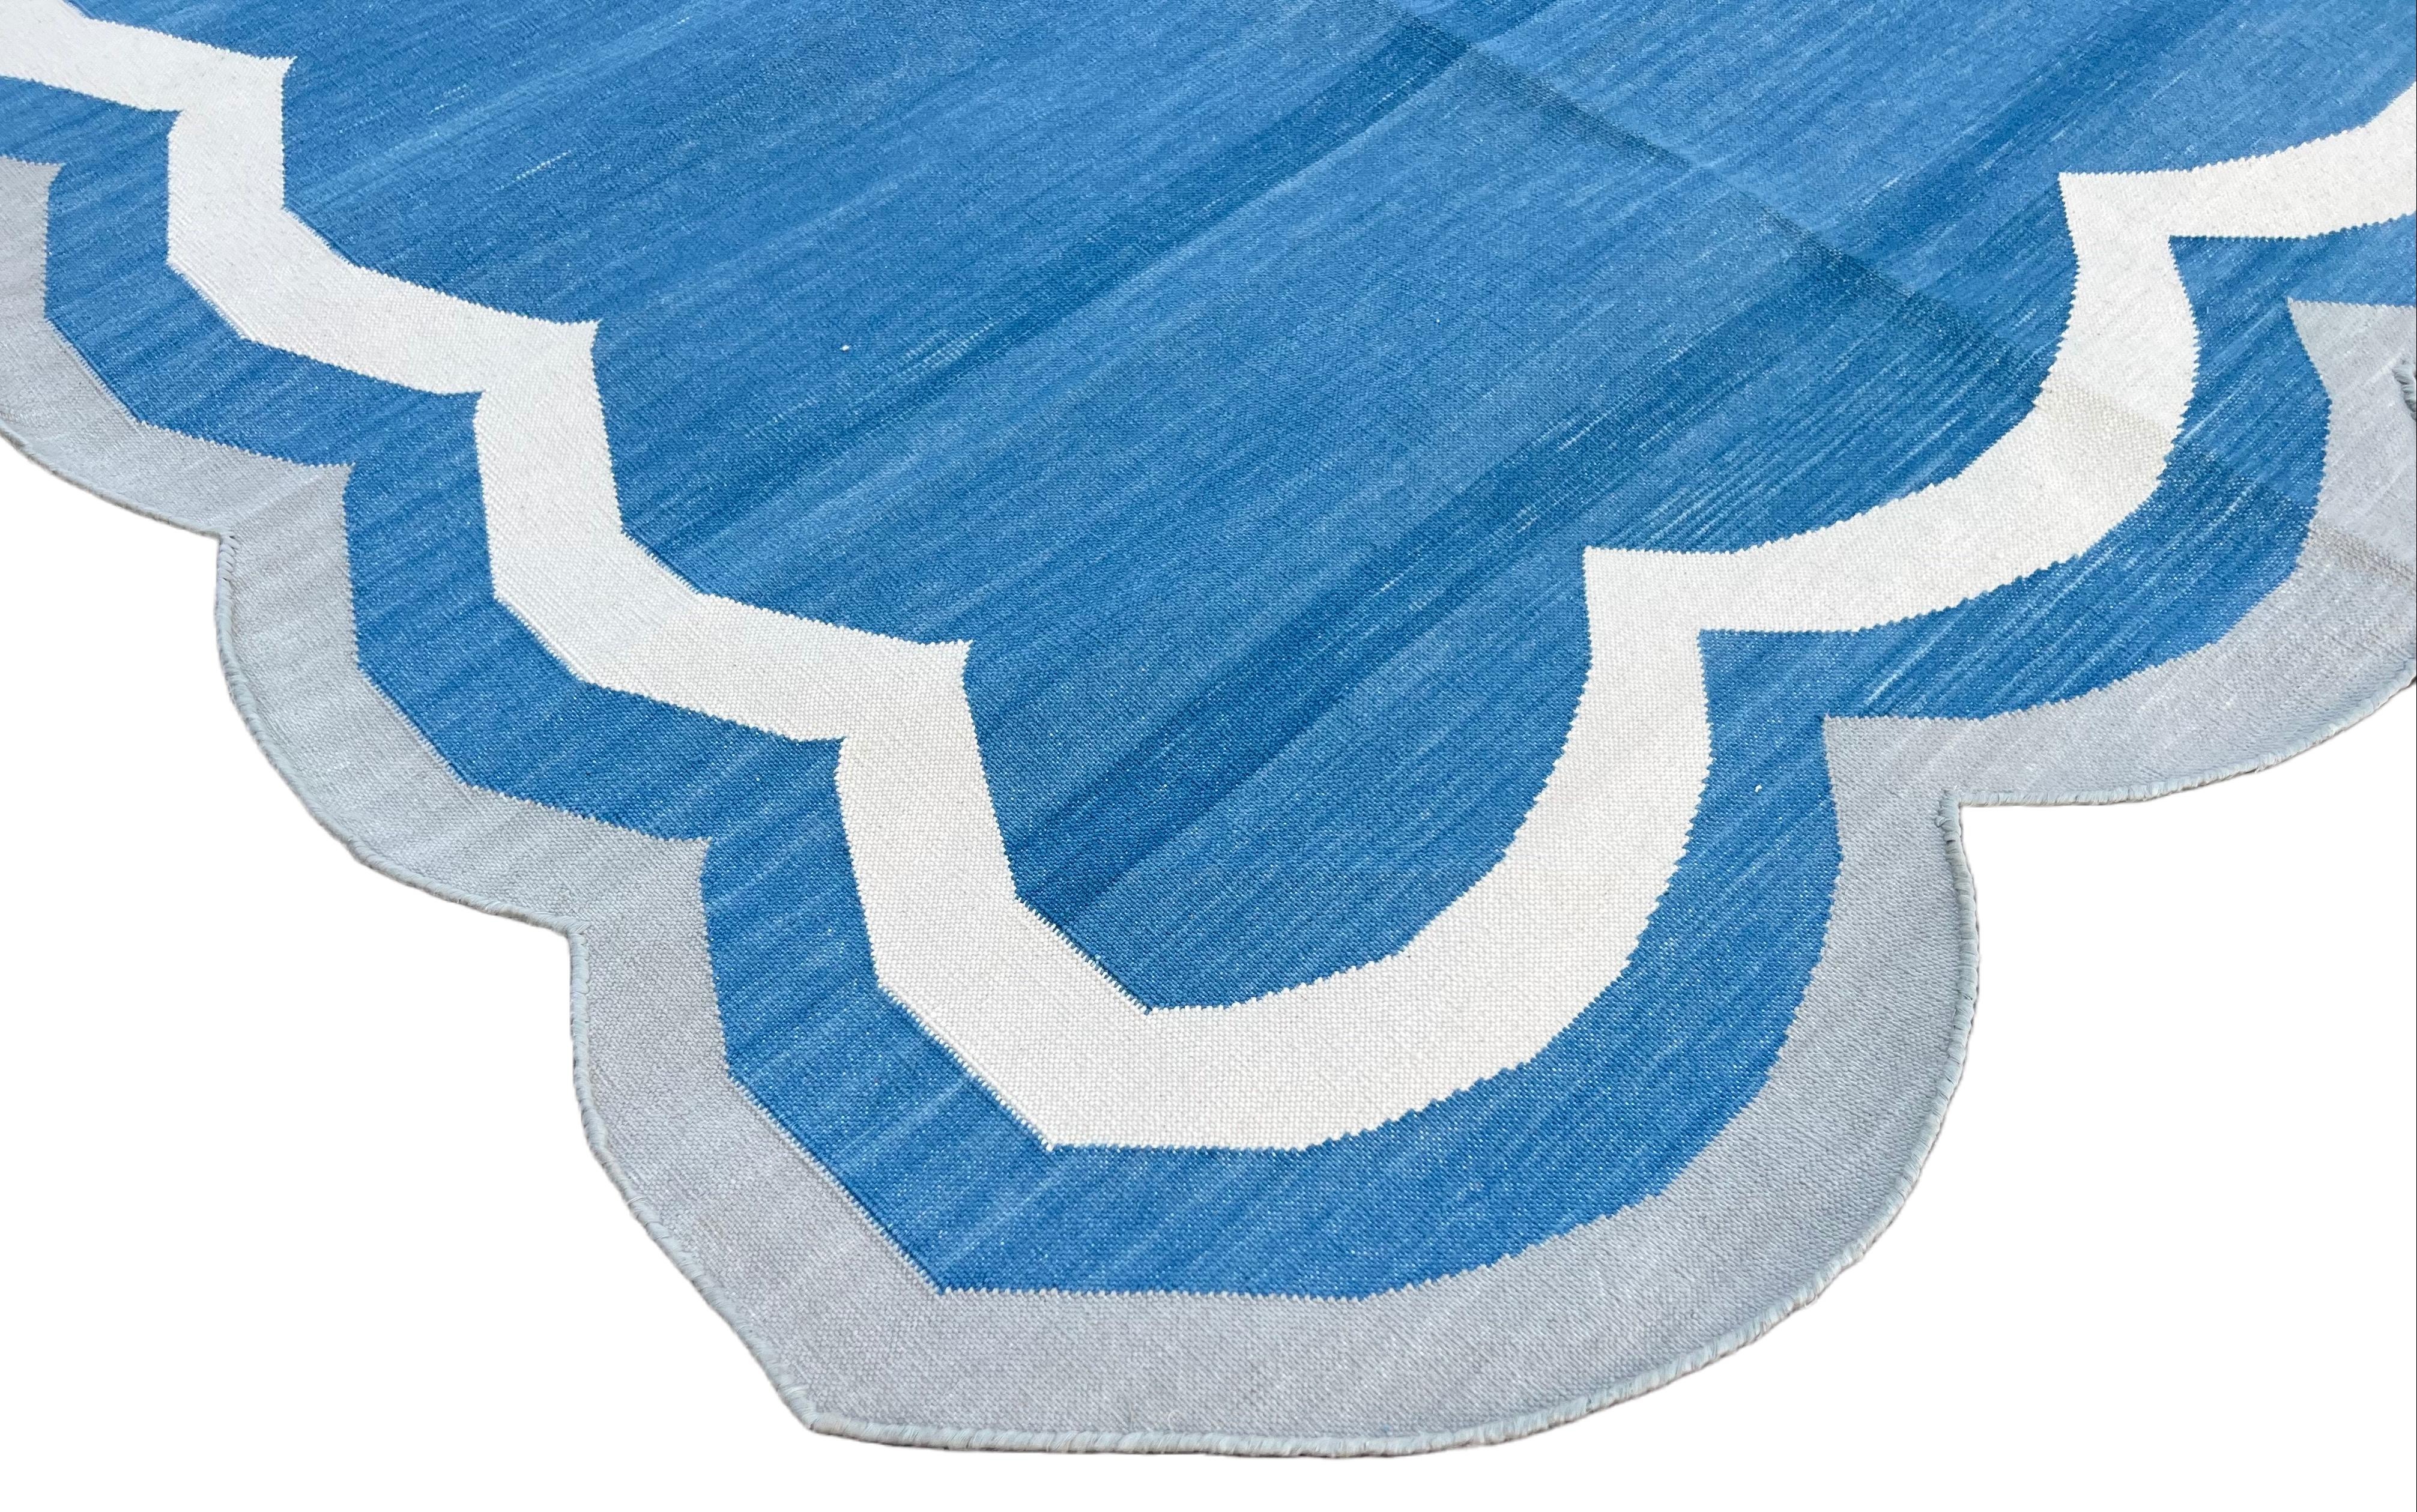 Natürliche pflanzlich gefärbte Baumwolle, blau, cremefarben und grau, gestreifter indischer Teppich - 8'x10'
Diese speziellen flachgewebten Dhurries werden aus 15-fachem Garn aus 100% Baumwolle handgewebt. Aufgrund der speziellen